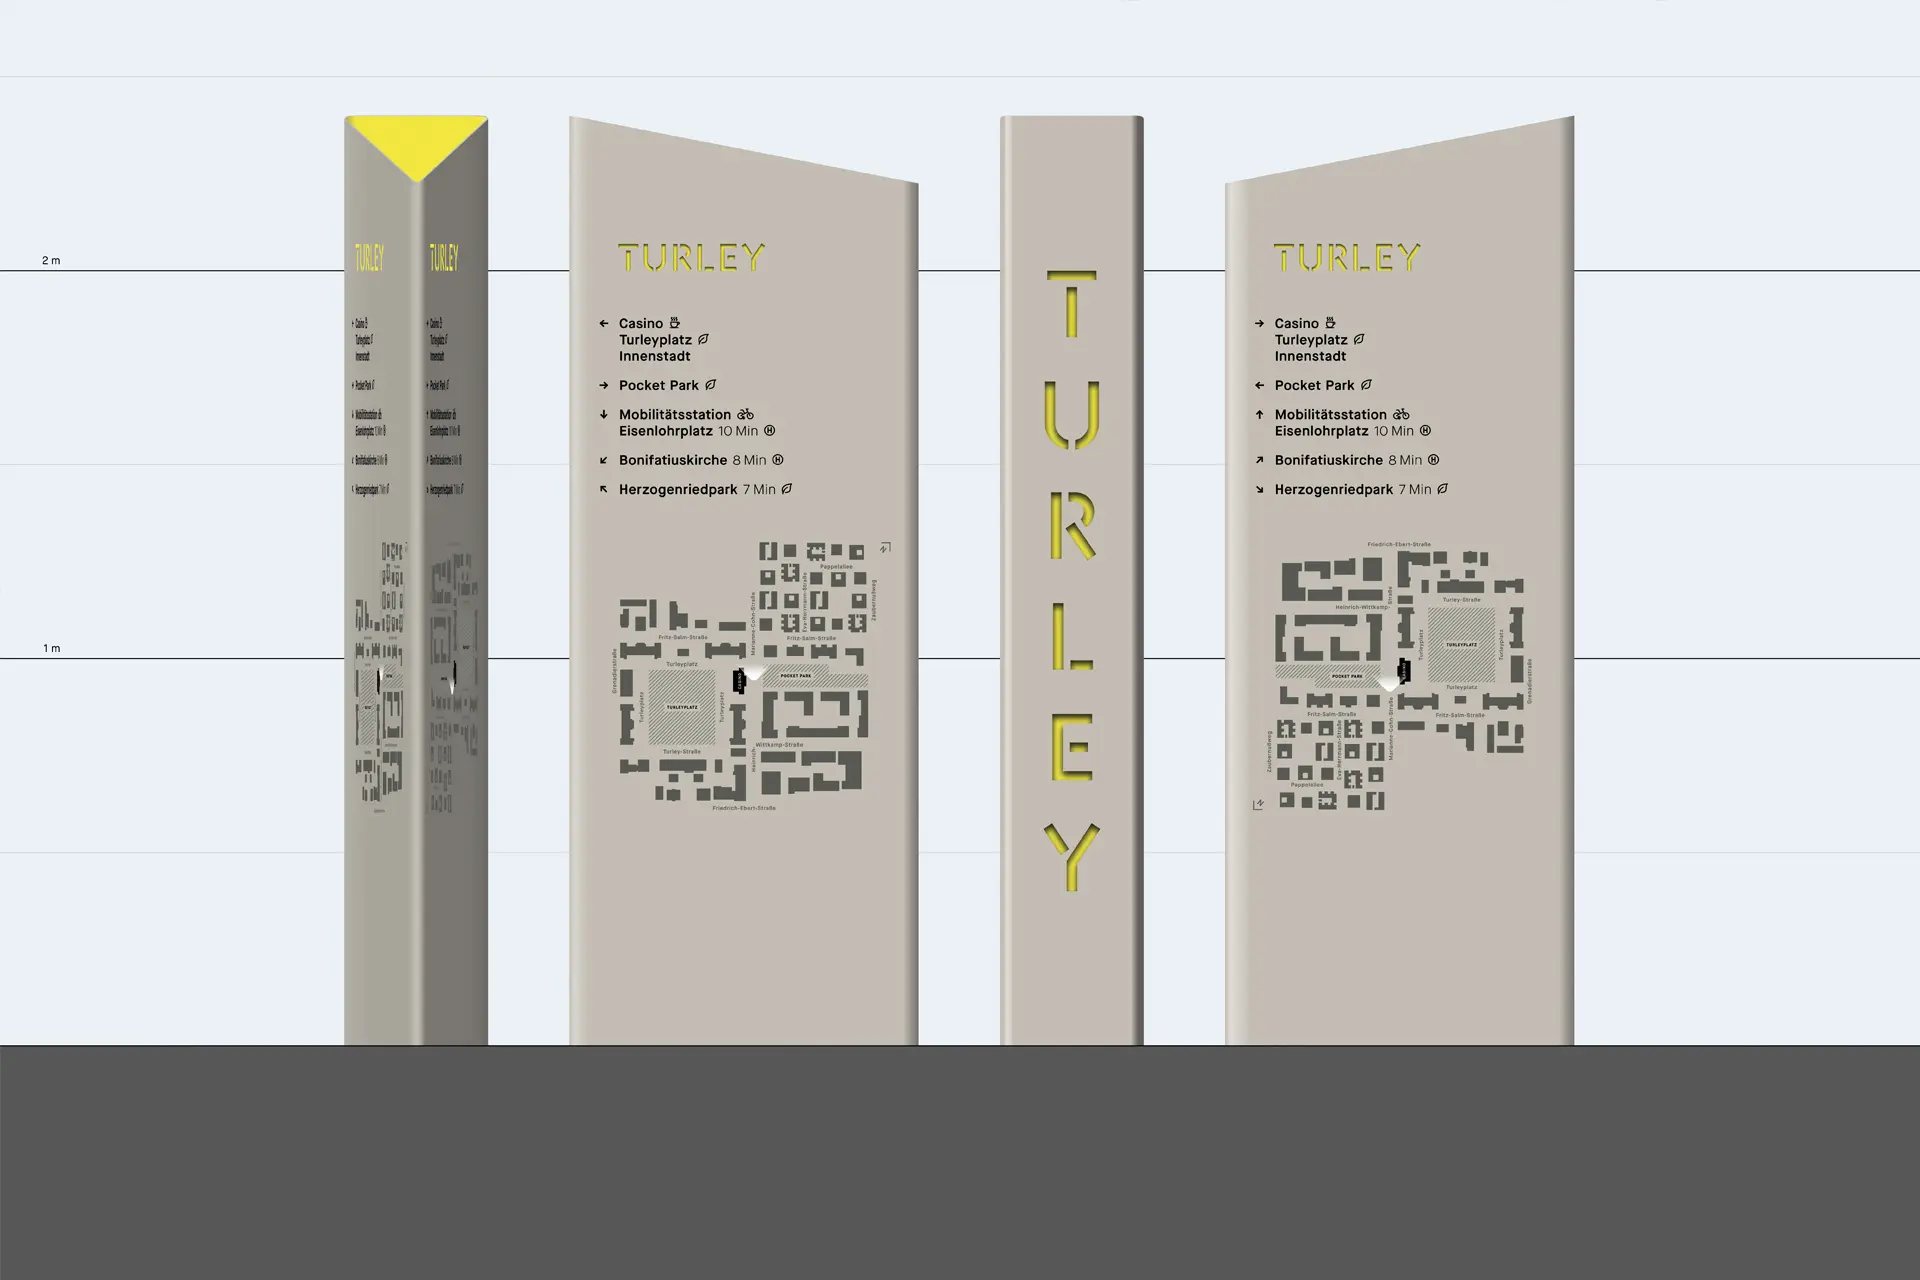 Individuelle Wegweiser Navigations Pylone für das Wegeleitsystem des Quartiers Turley Mannheim © Diemer & Schweig Designstudio